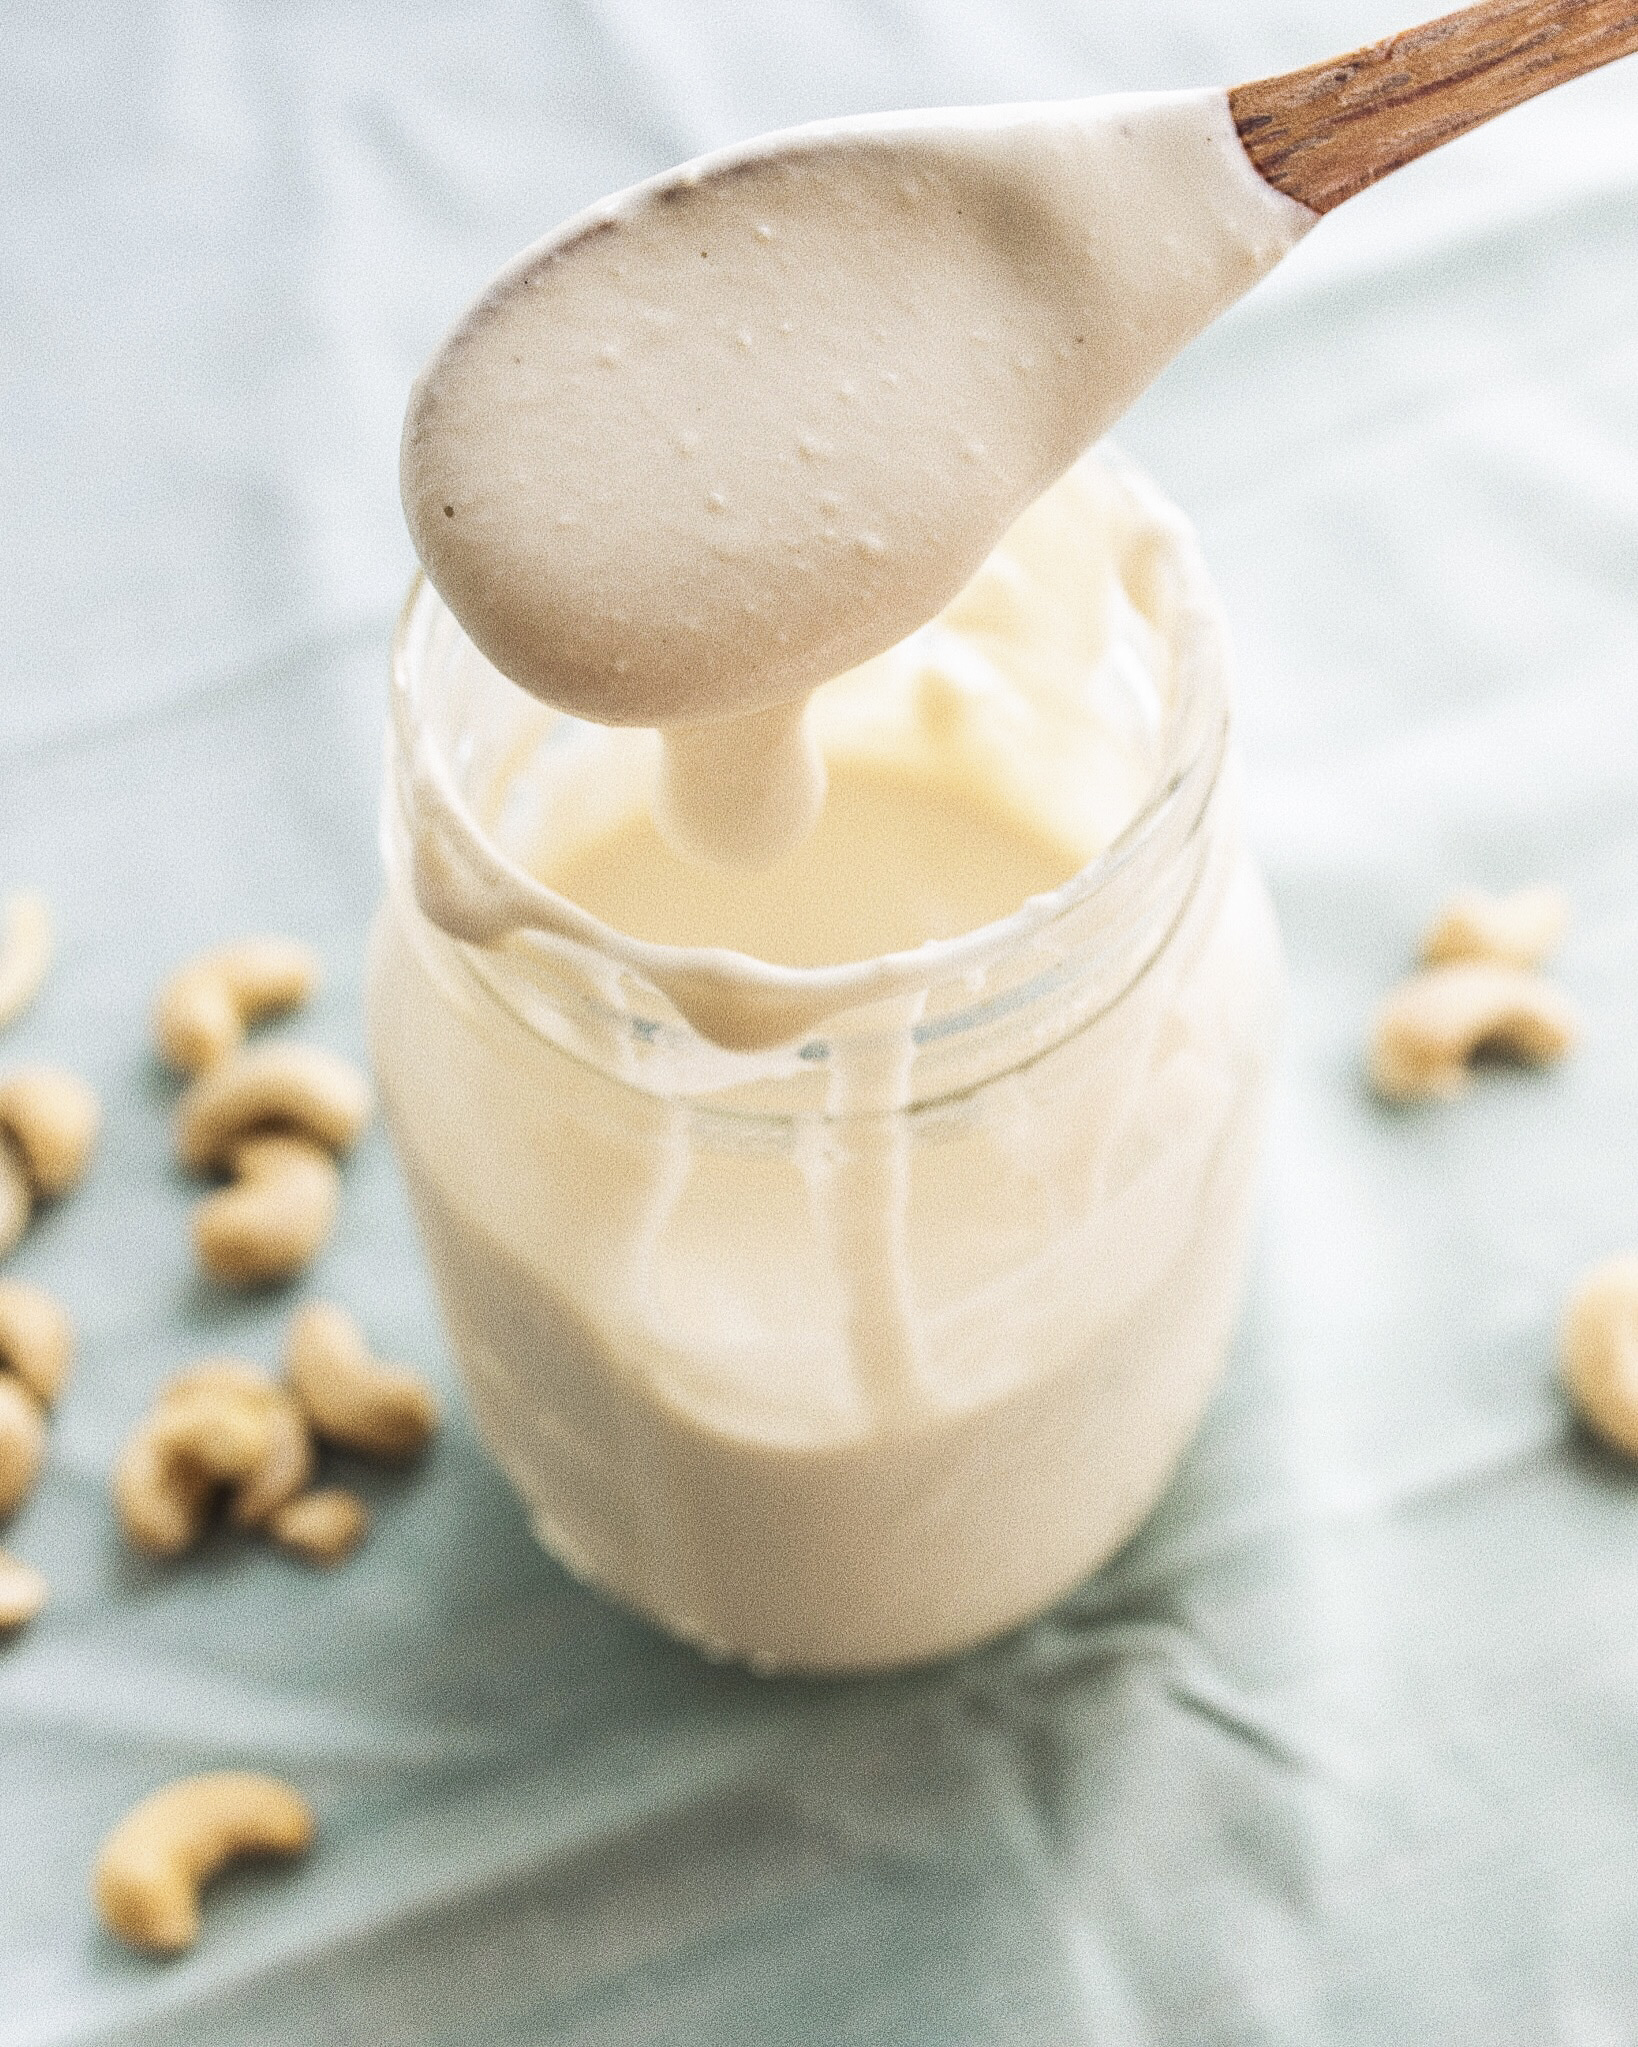 Easy Vegan Sour Cream Plant-Based Recipe